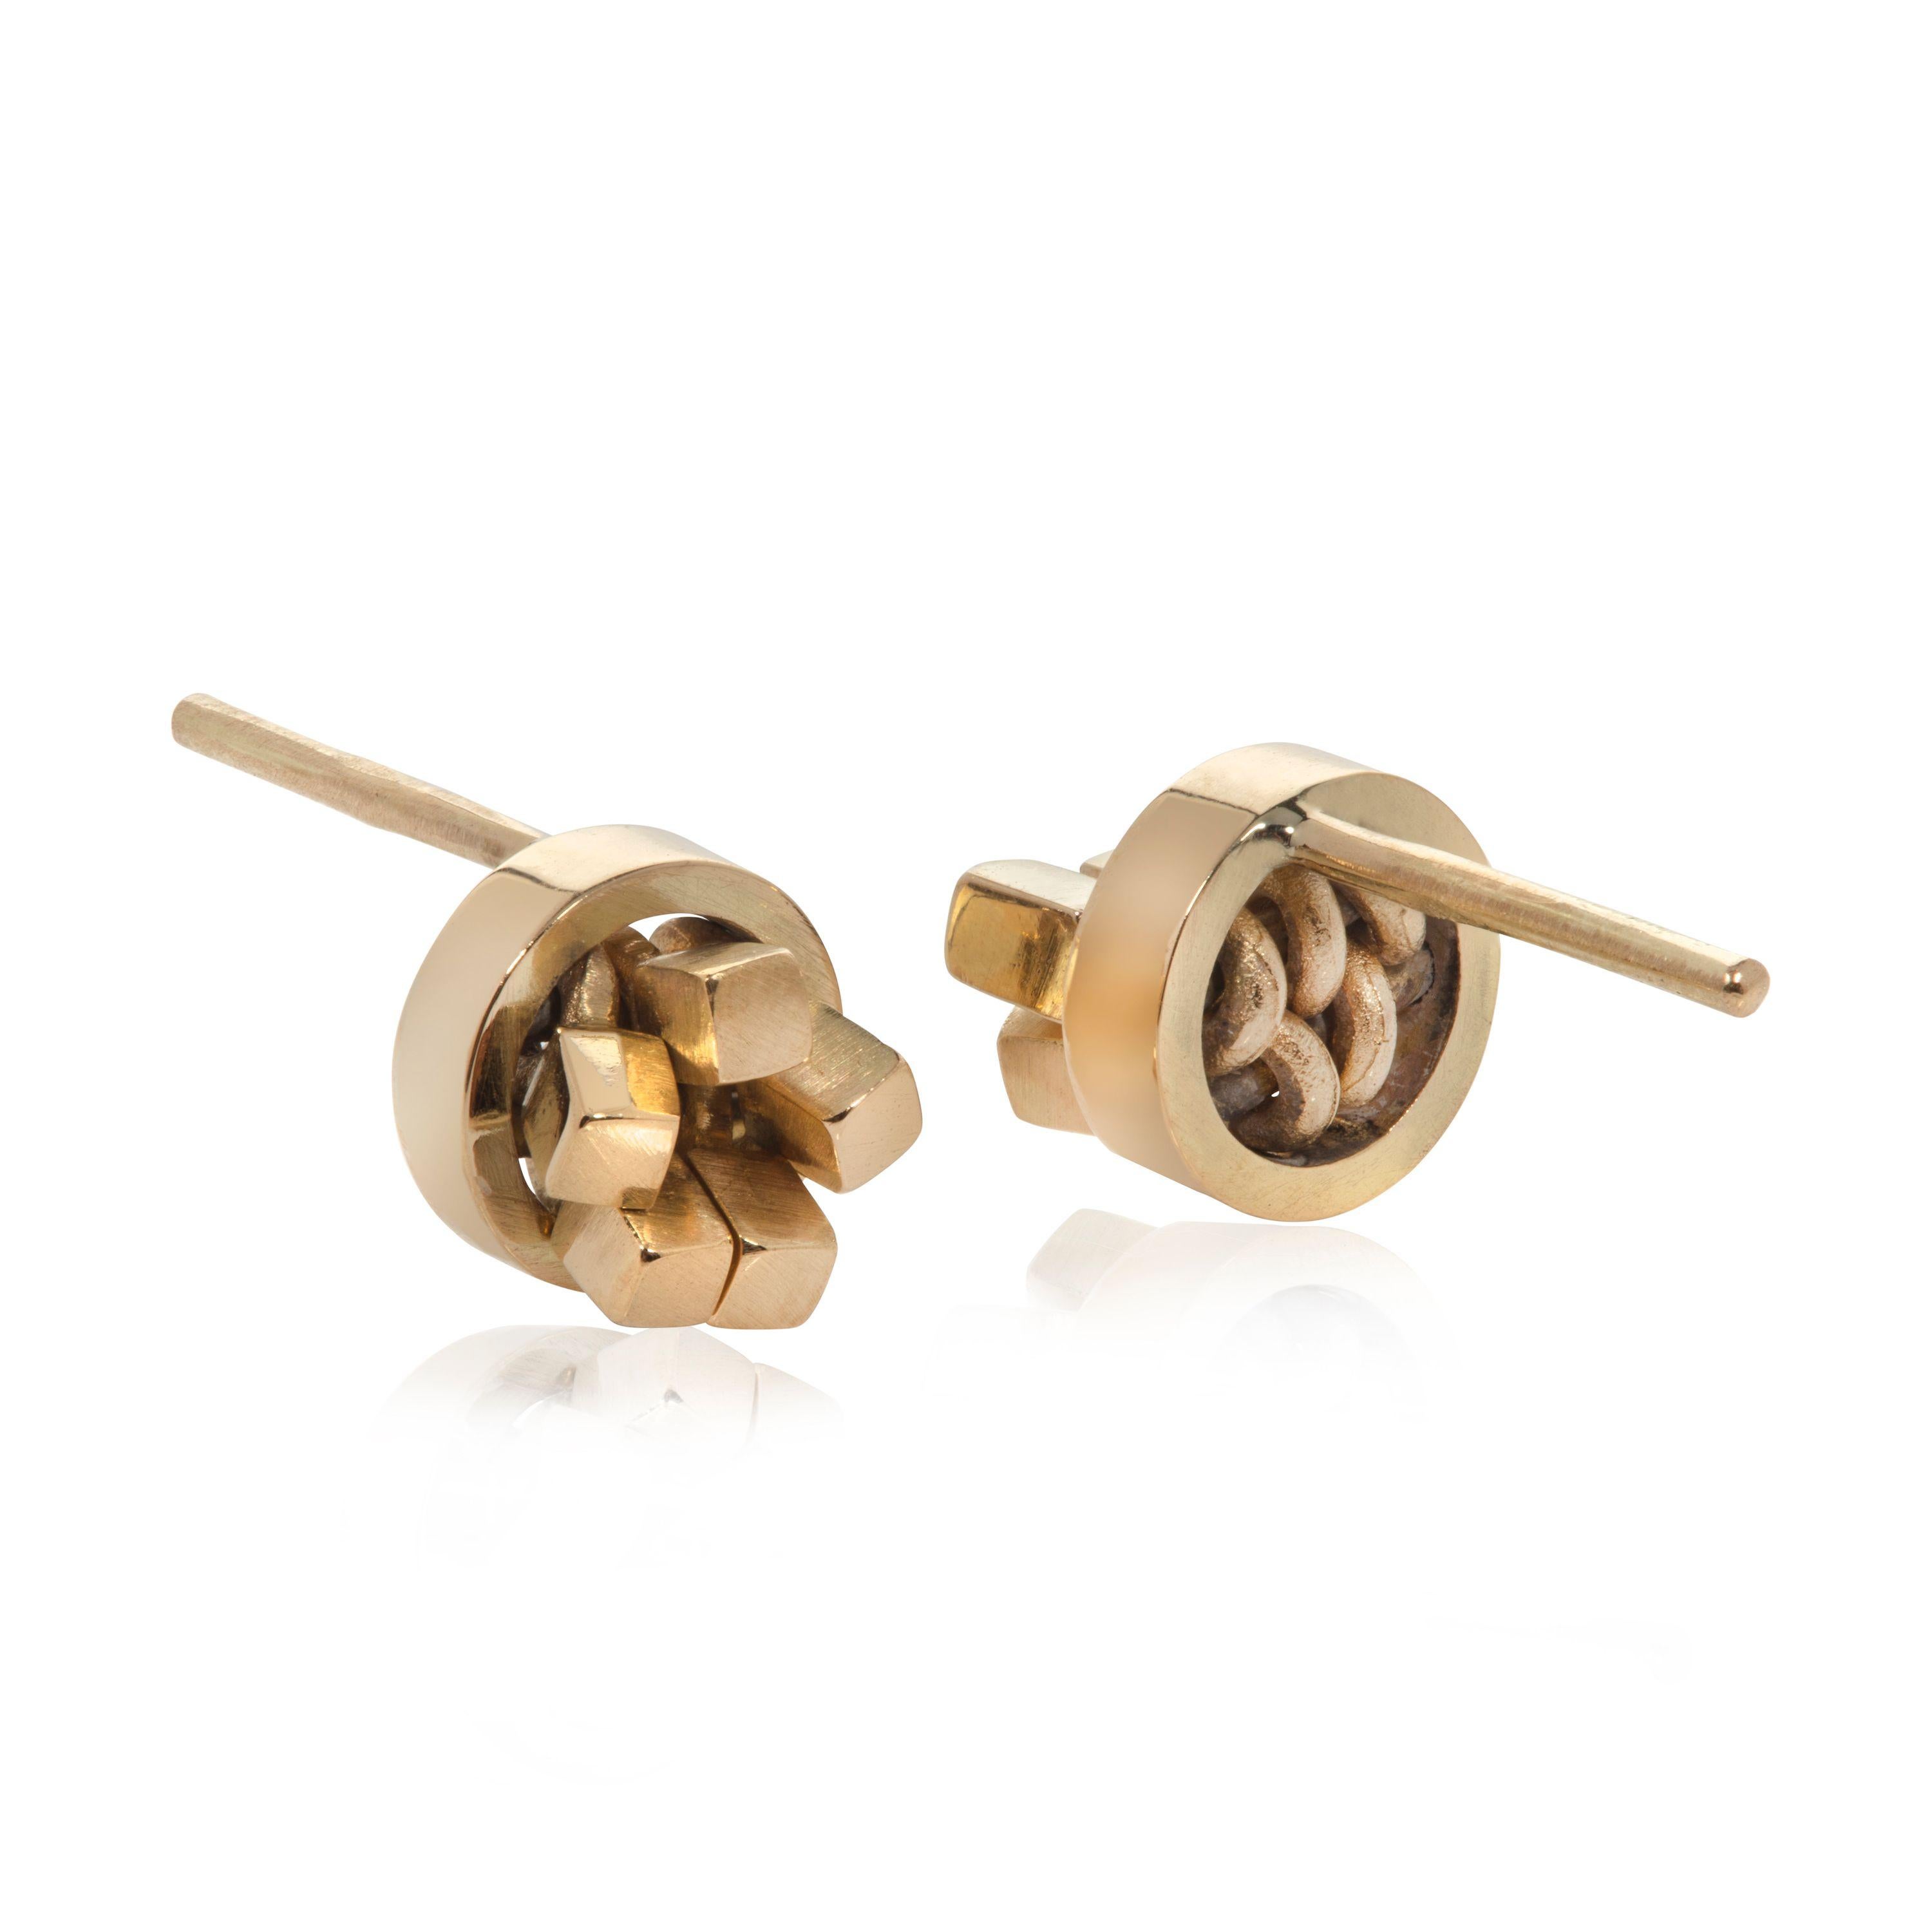 Ces boucles d'oreilles élégantes et frappantes en or 18 carats sont conçues et fabriquées par la bijoutière britannique Sarah Pulvertaft. Dans son cadre circulaire simple, chaque boucle d'oreille est composée de mini-cubes individuels. Ces cubes